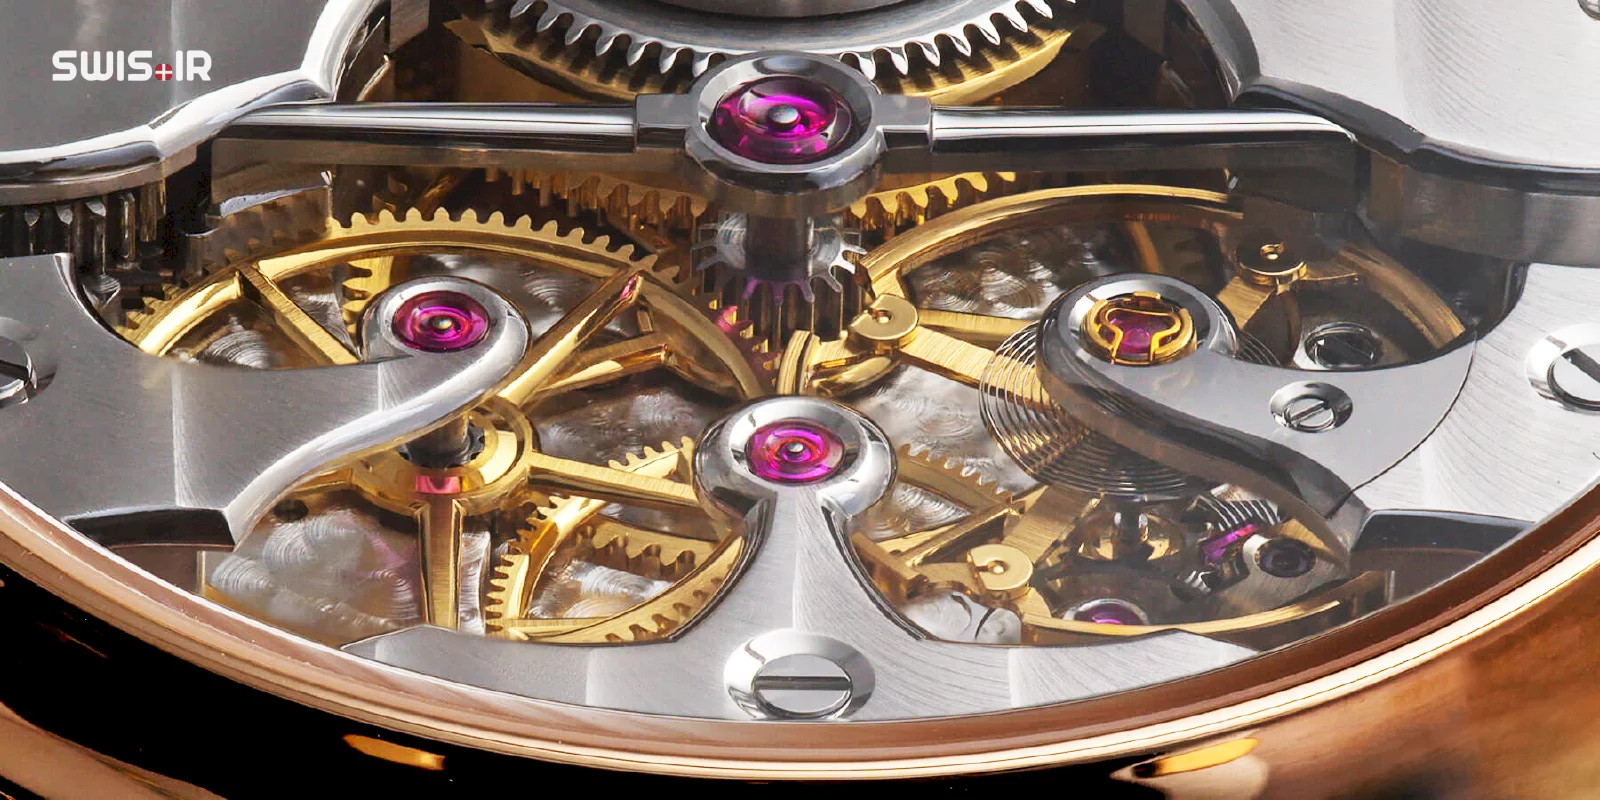 نمایش جواهرات (Jewels) یا سنگهای به کار رفته در یک موتور ساعت مکانیکی ساخت سوئیس